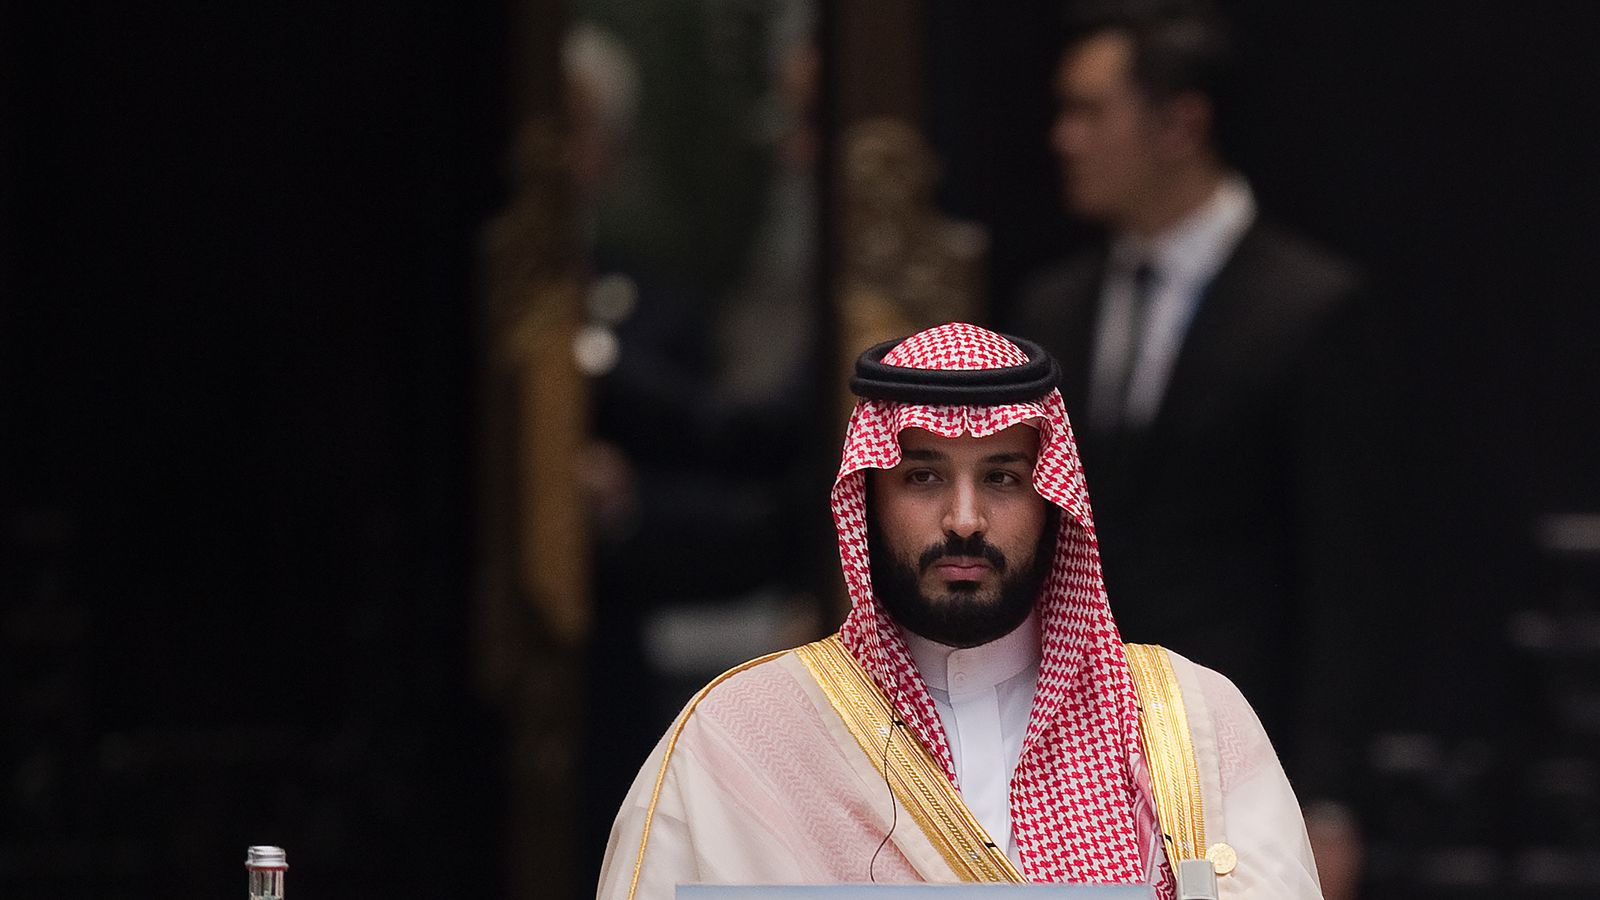 Mohammed bin Salman: Reformer or tyrant?